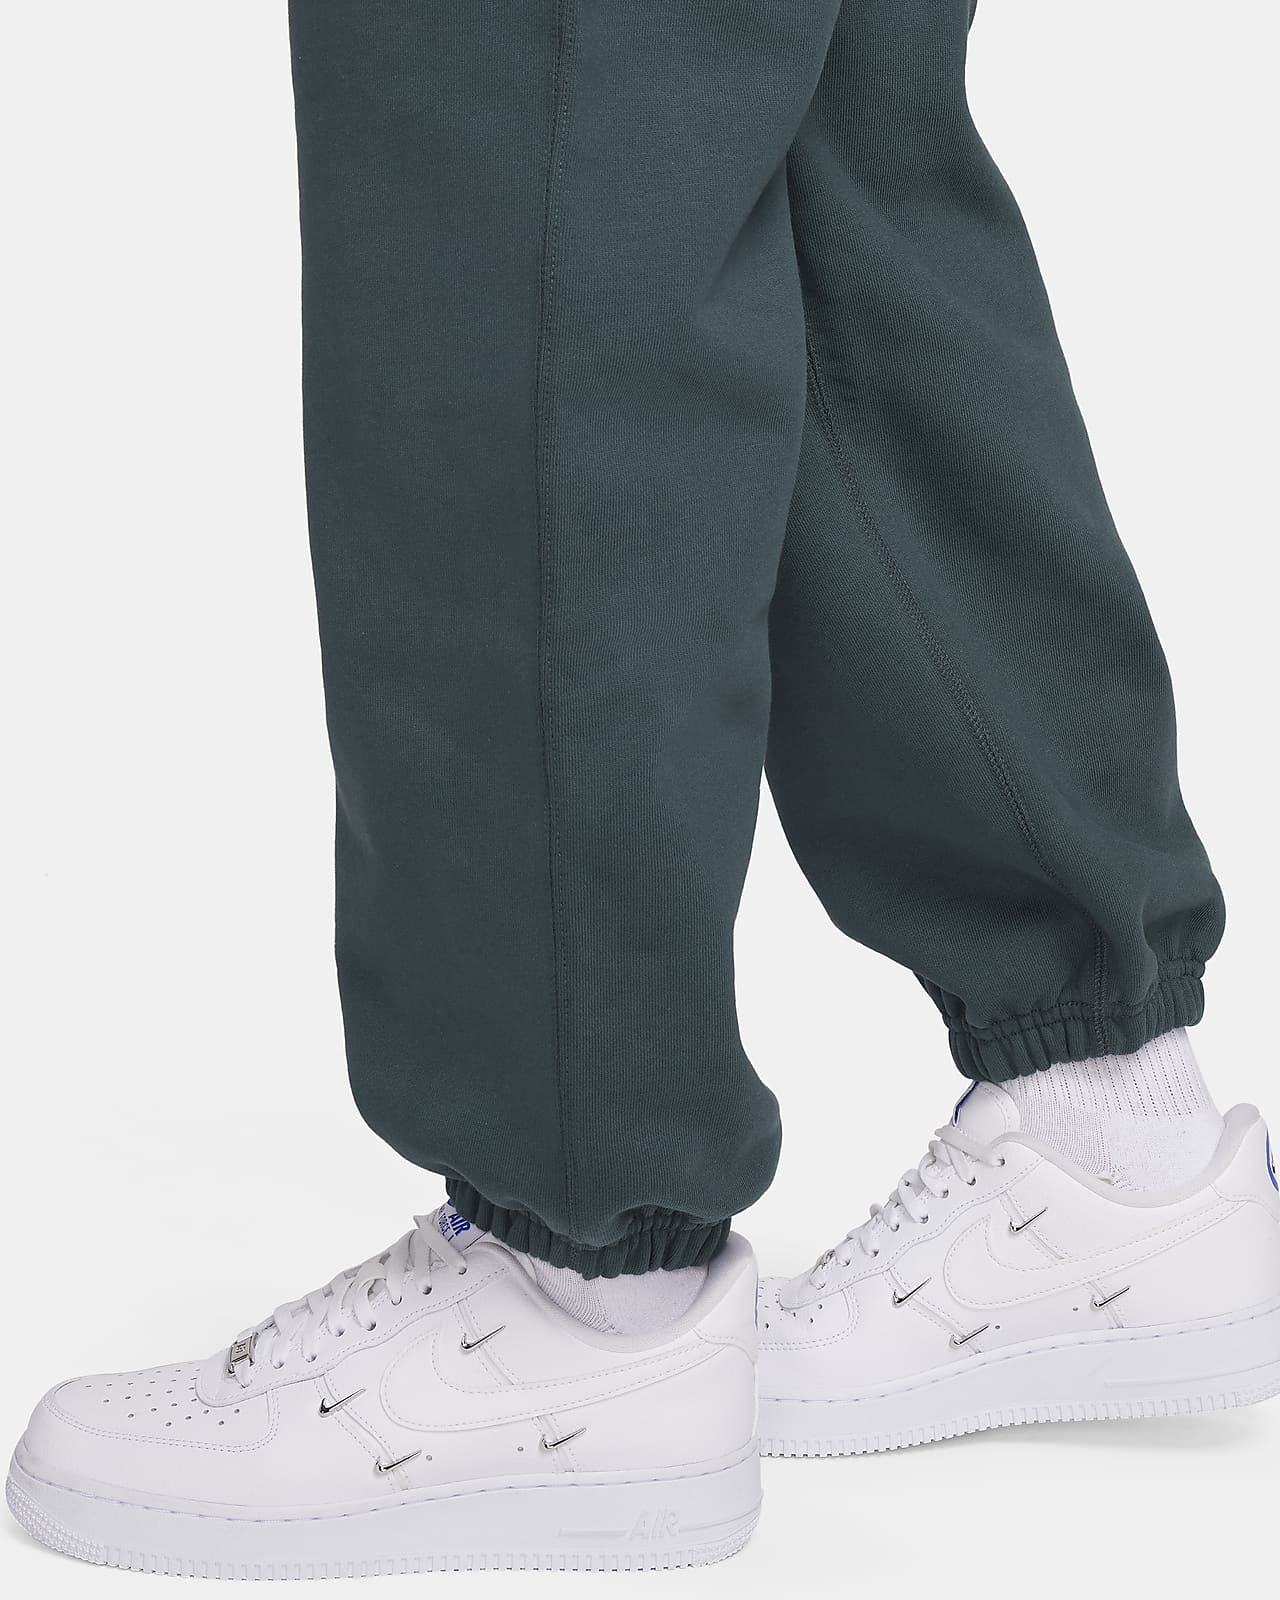 XL] Nike NRG hoodie (CV0552-121) + [S] Nike NRG pants (CW5460-121), White  set